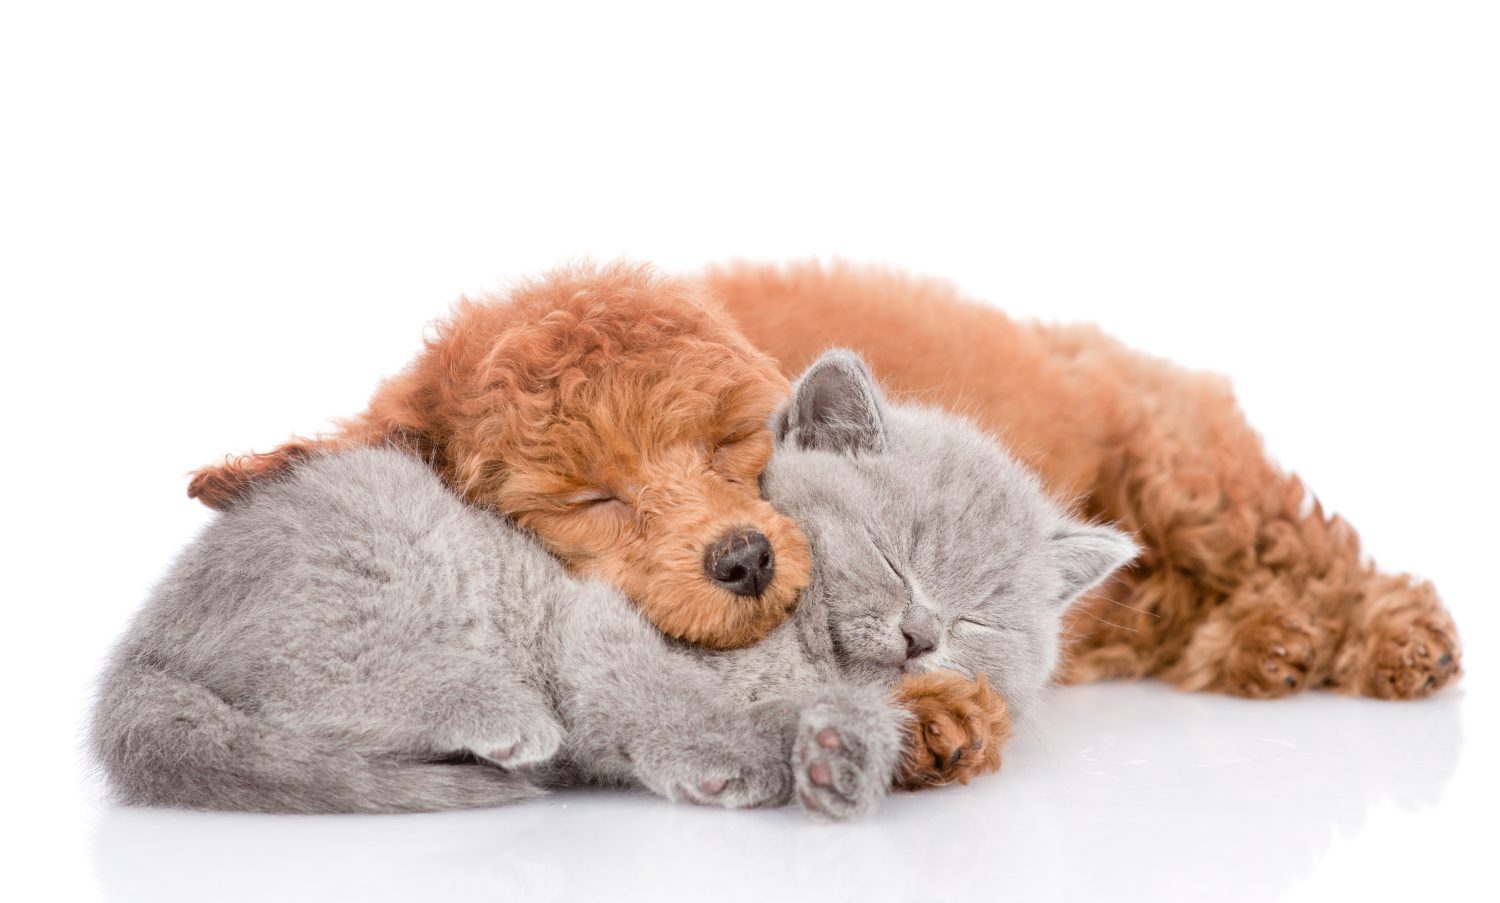 Cucciolo di barboncino e gattino che dormono insieme.  isolato su sfondo bianco